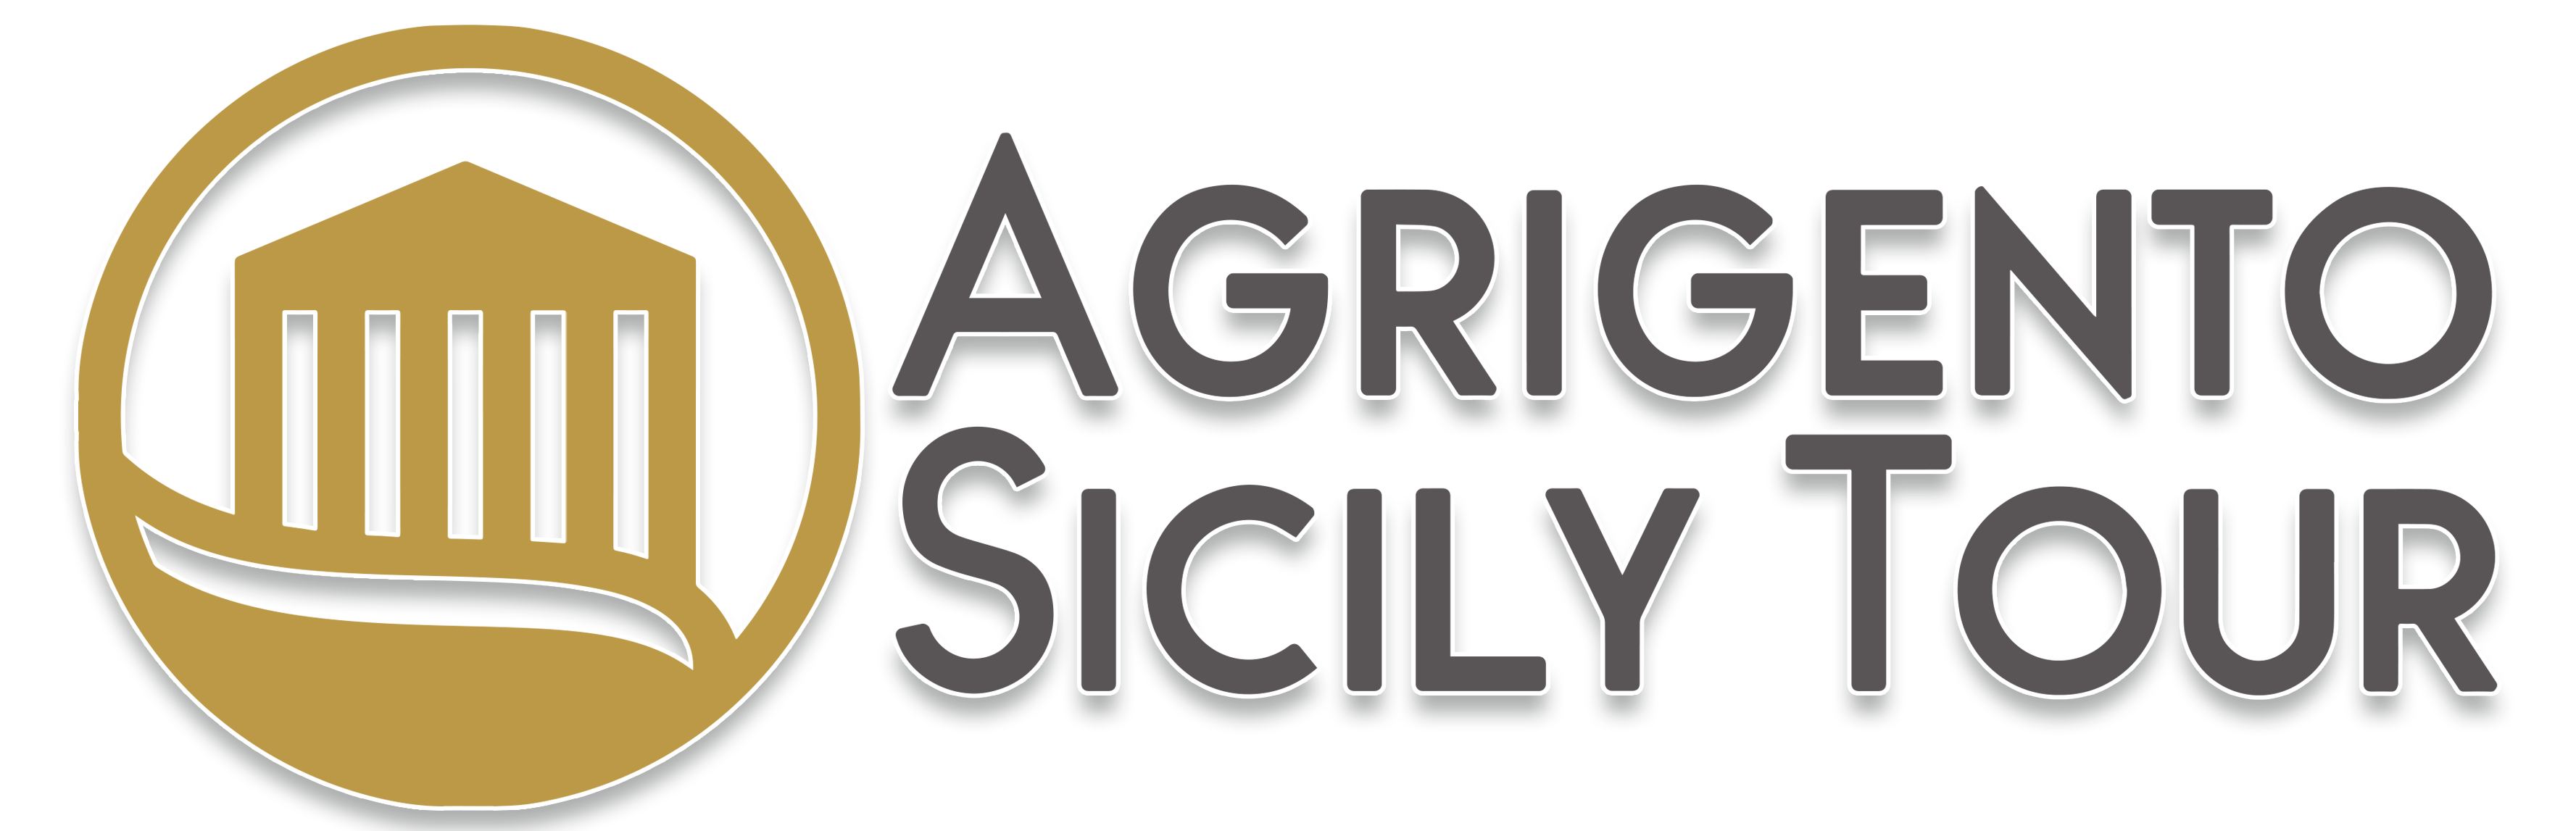 Agrigento Sicily Tour - Tour Guide